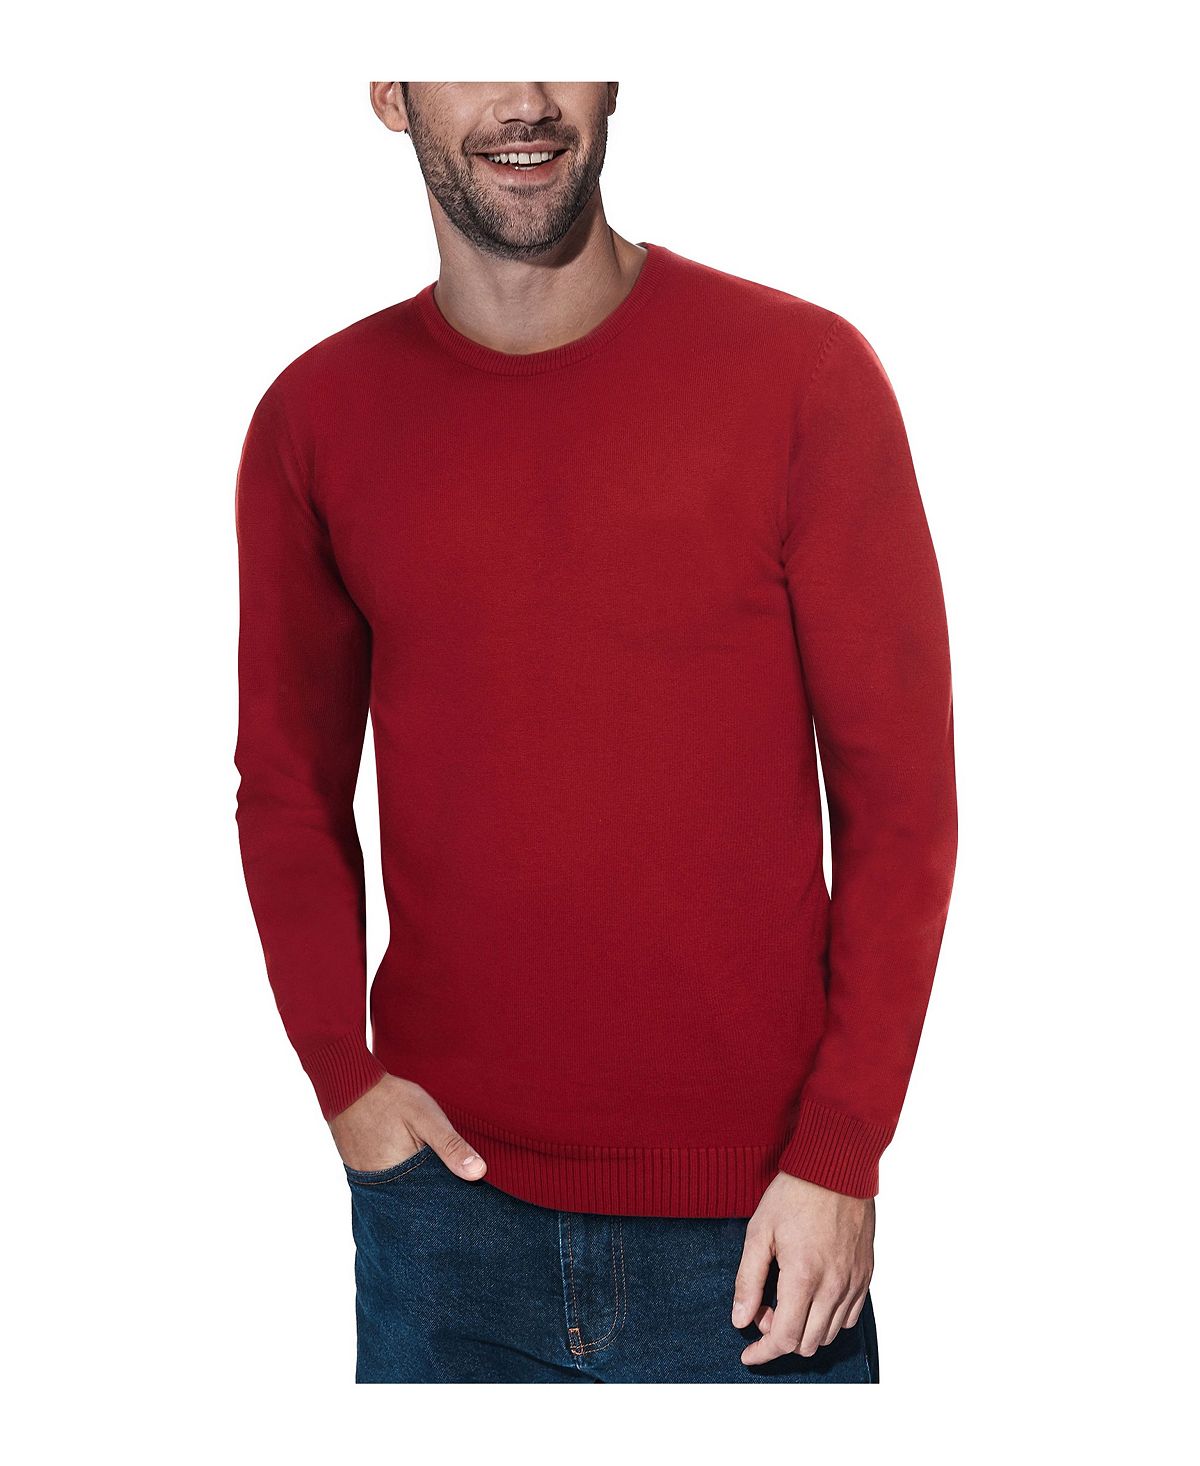 Мужской базовый пуловер с круглым вырезом, свитер средней плотности X-Ray